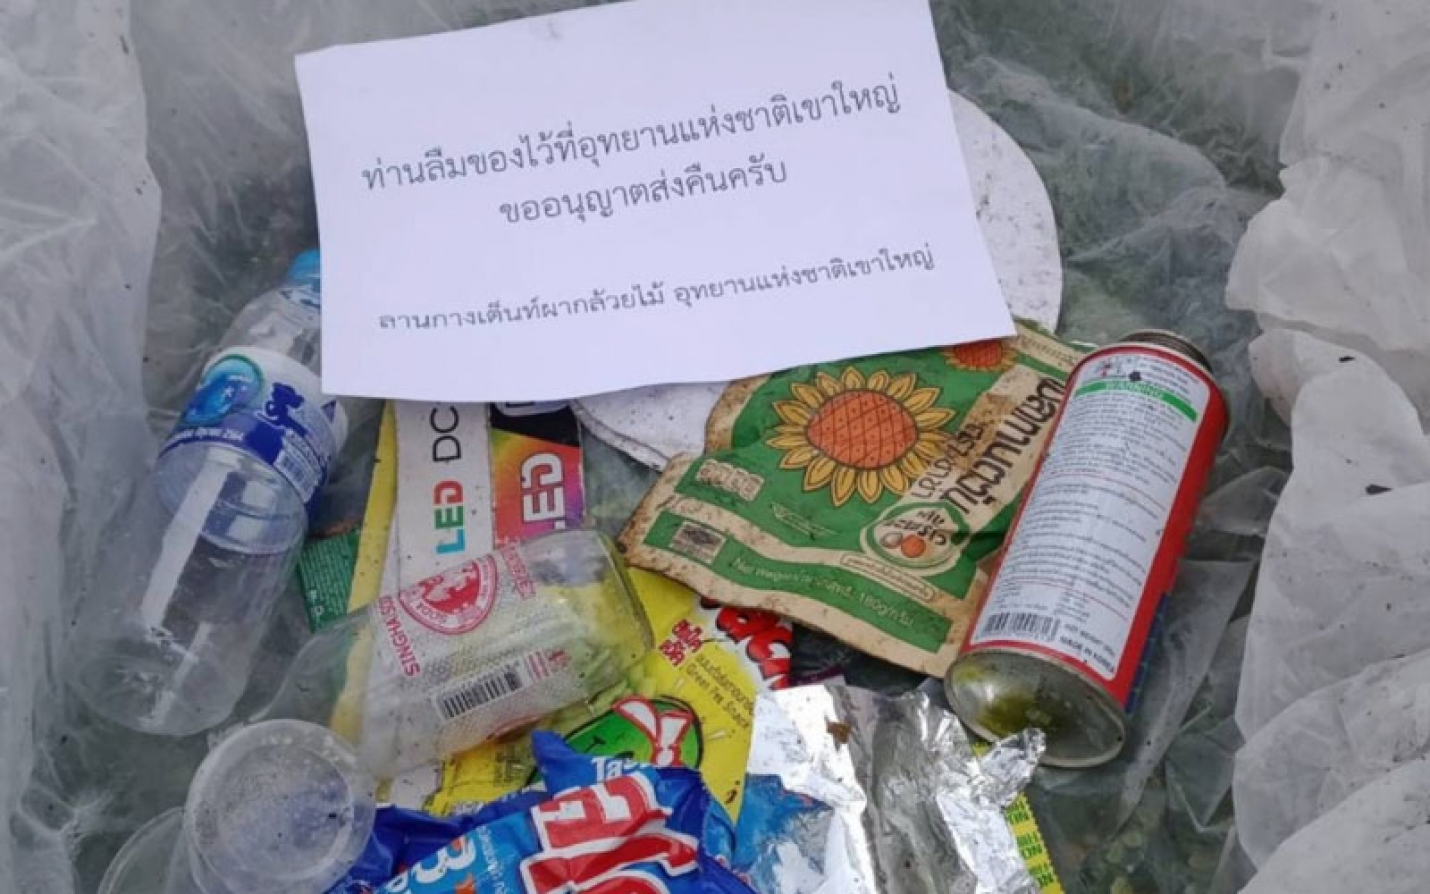 La Thaïlande renvoie à des touristes un colis rempli de déchets laissés dans un parc national